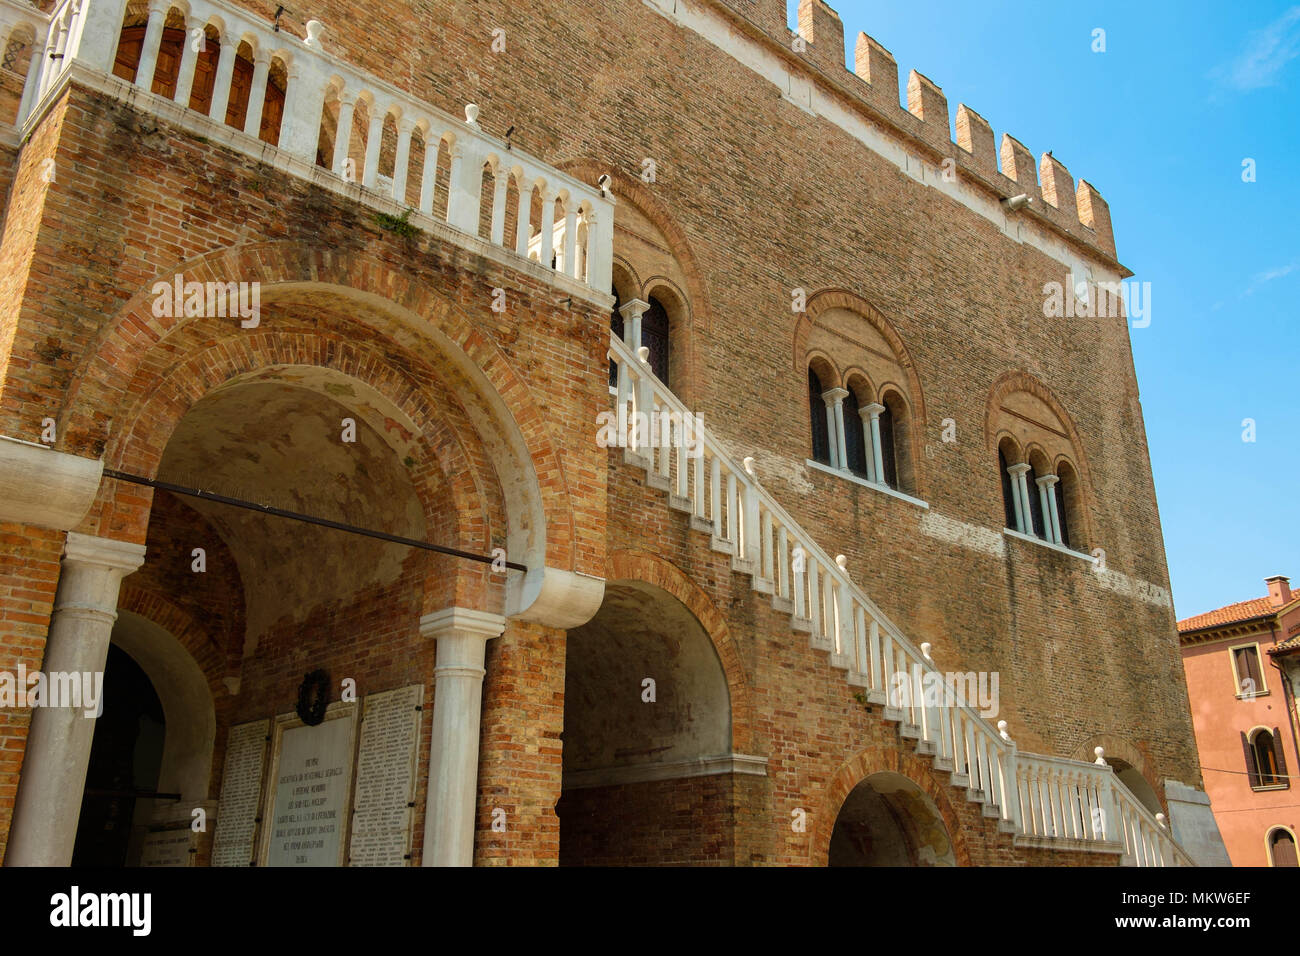 Le Palazzo dei Trecento, également appelé Palazzo della Ragione, est le siège du conseil de la ville de Treviso, Italie et forme le cœur de la ville. Banque D'Images